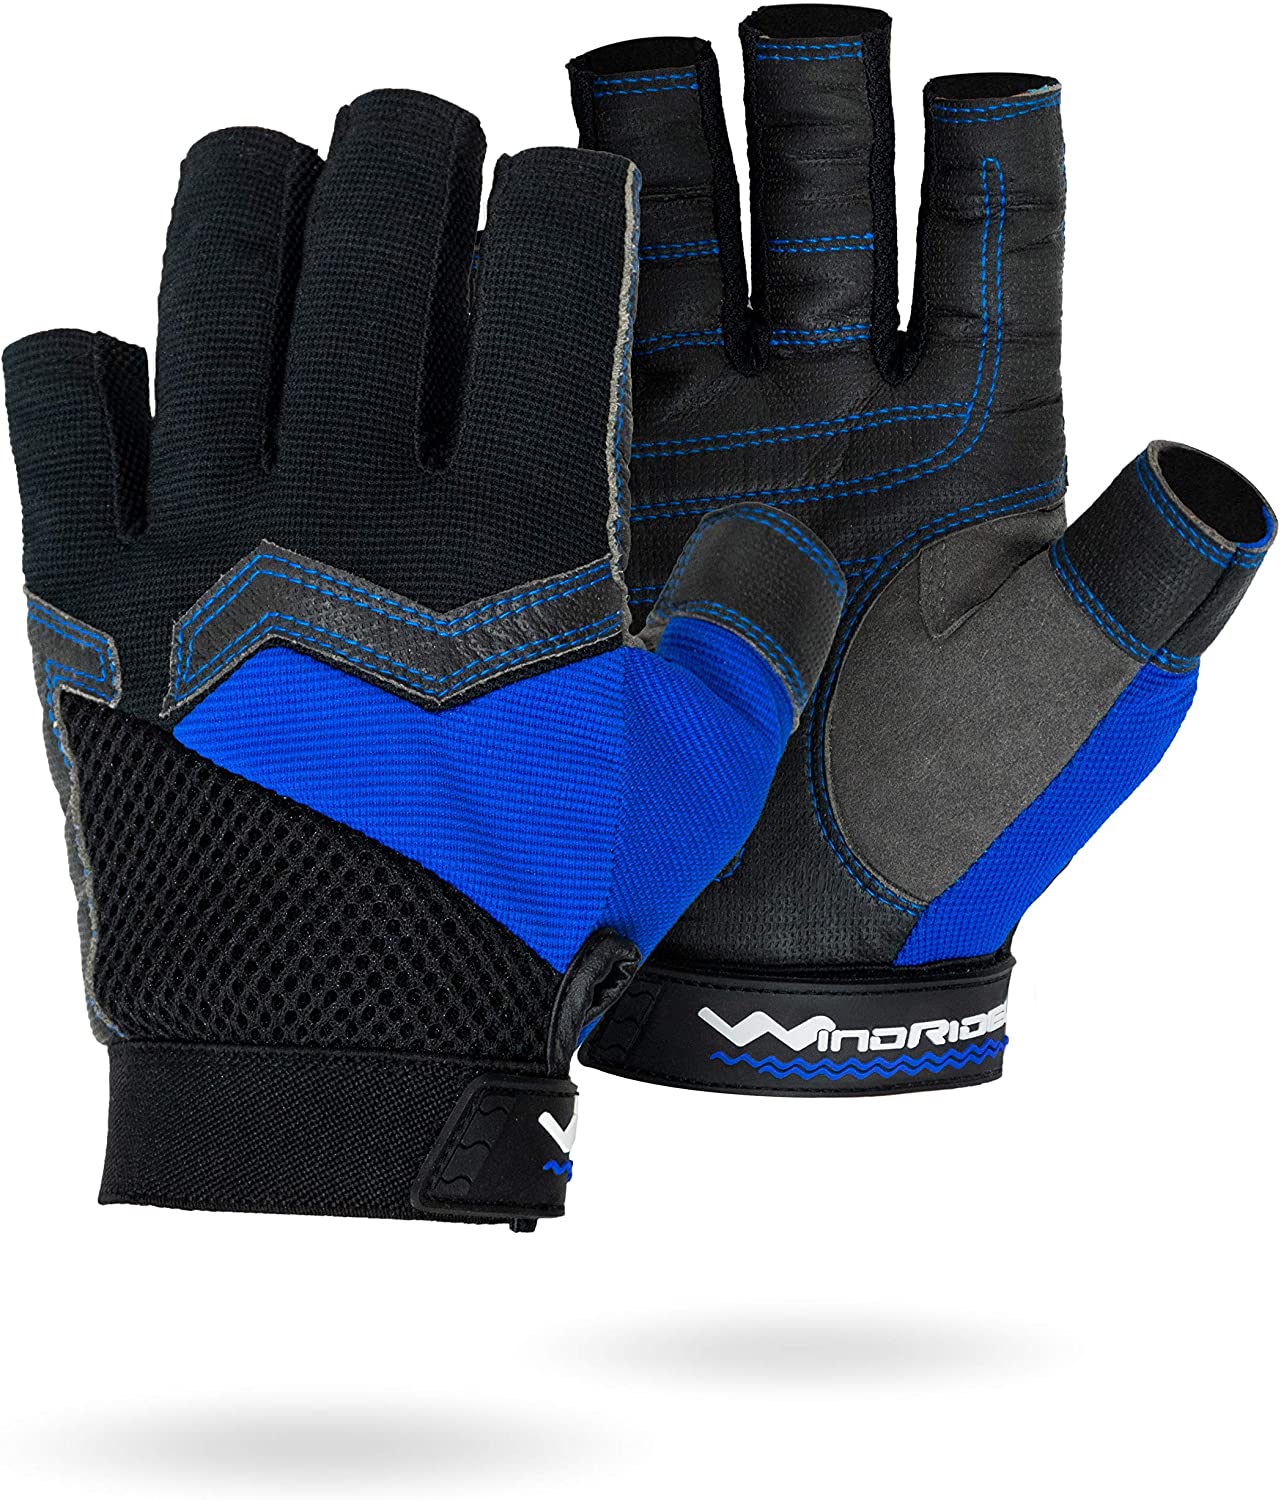 WindRider Ultra Grip Gloves